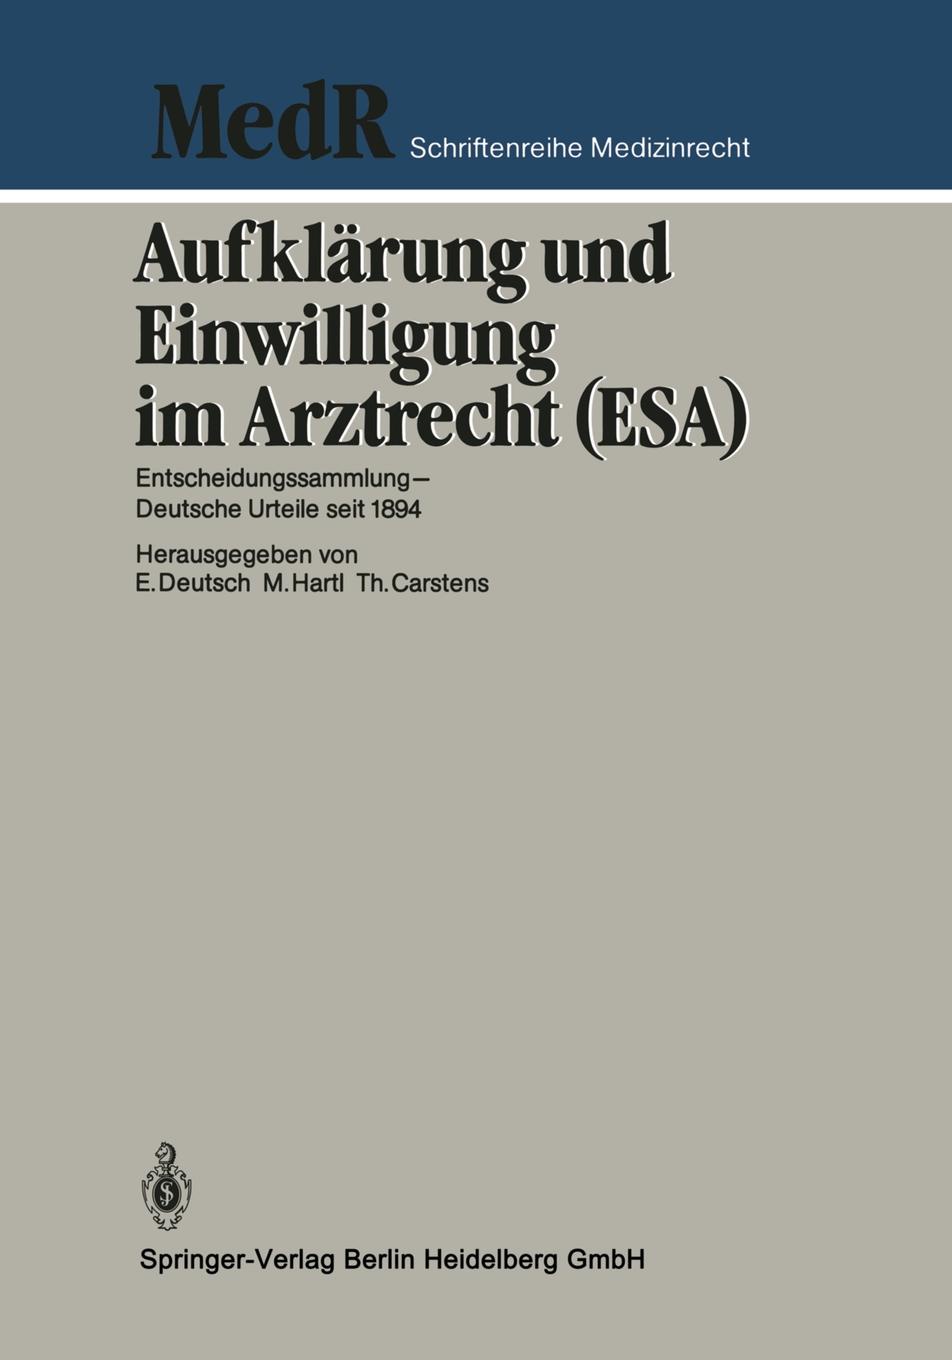 Aufklarung und Einwilligung im Arztrecht (ESA). Entscheidungssammlung - Deutsche Urteile seit 1894